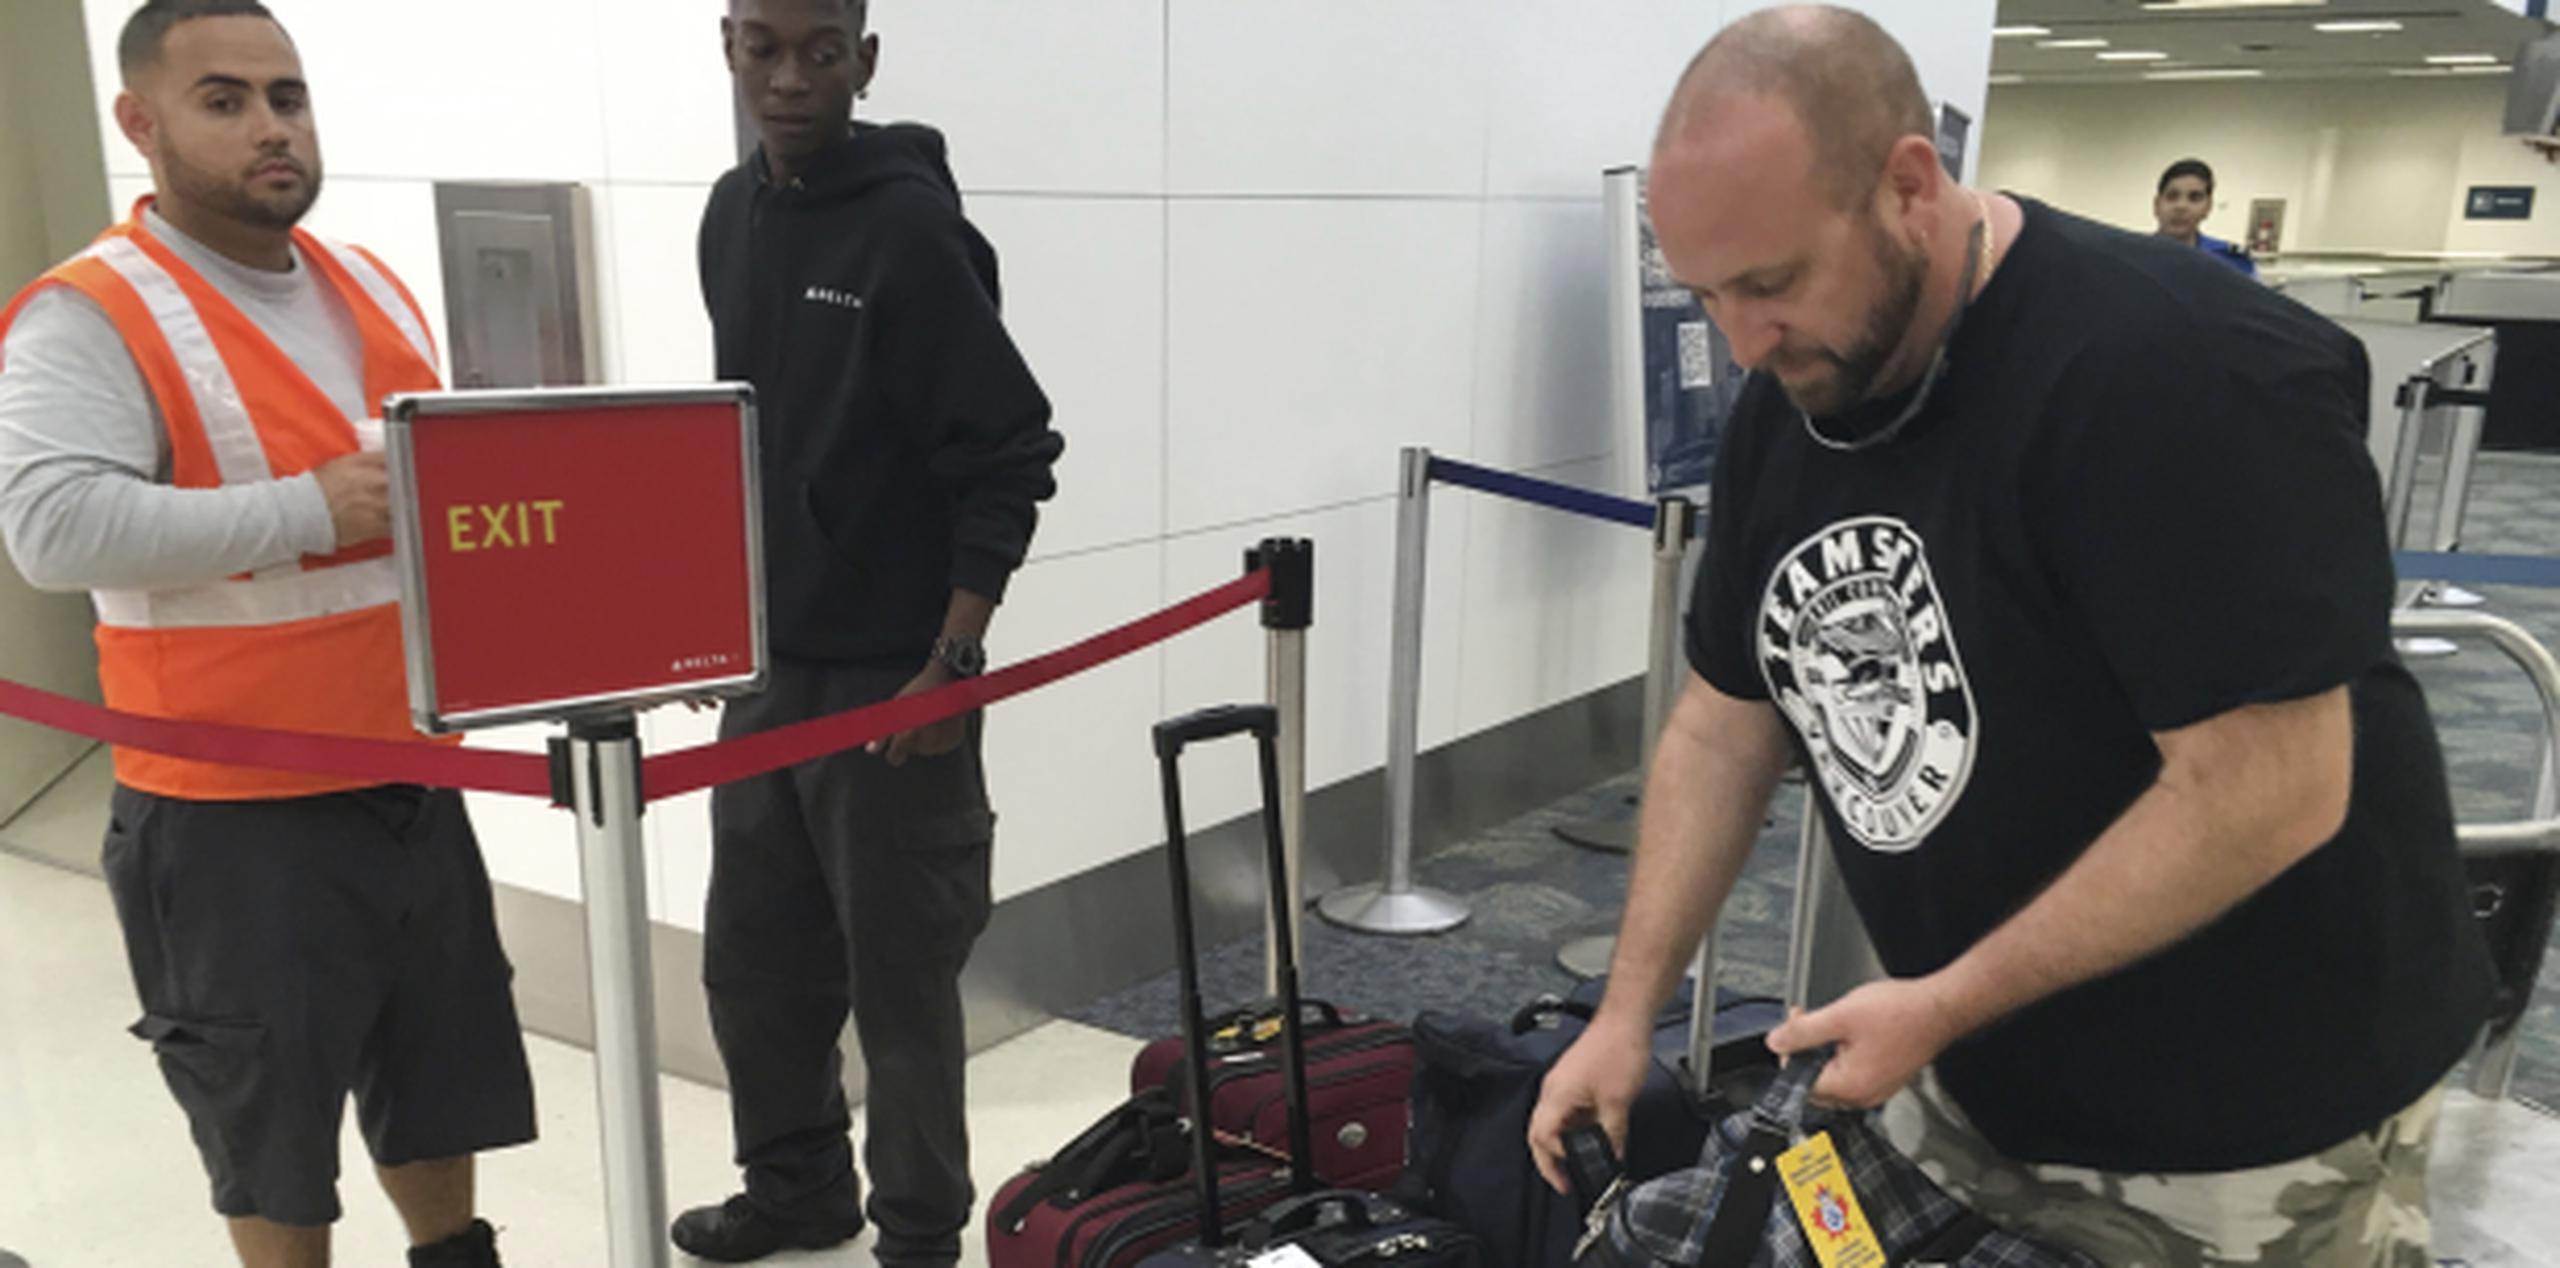 Dan Kovac busca sus maletas en el aeropuerto de Ft. Lauderdale. (AP)